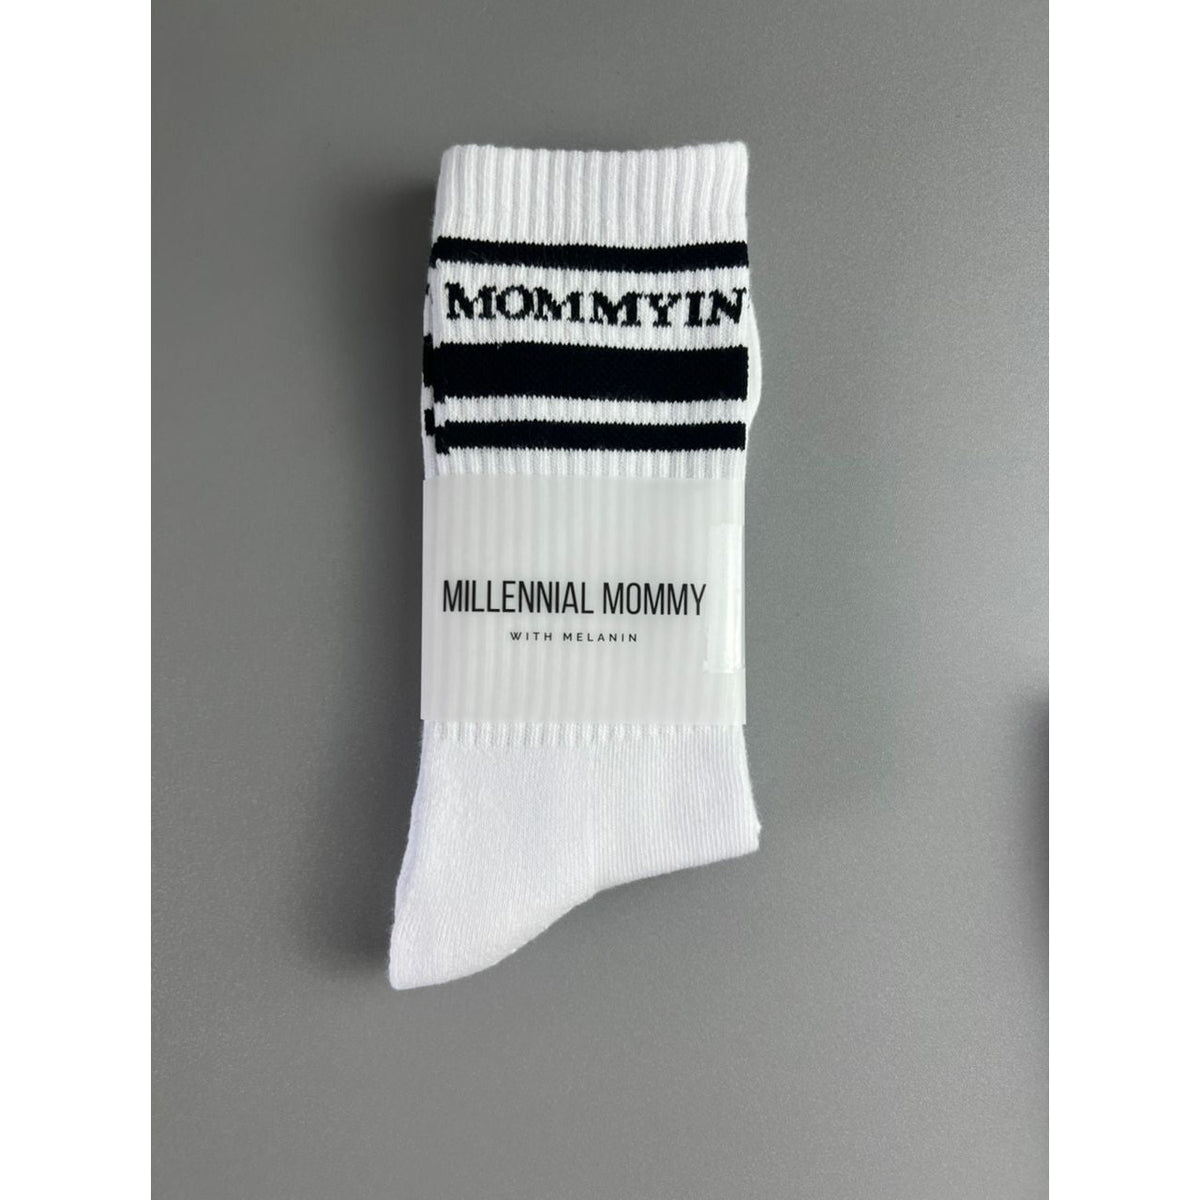 Mommyin Crew Socks - White